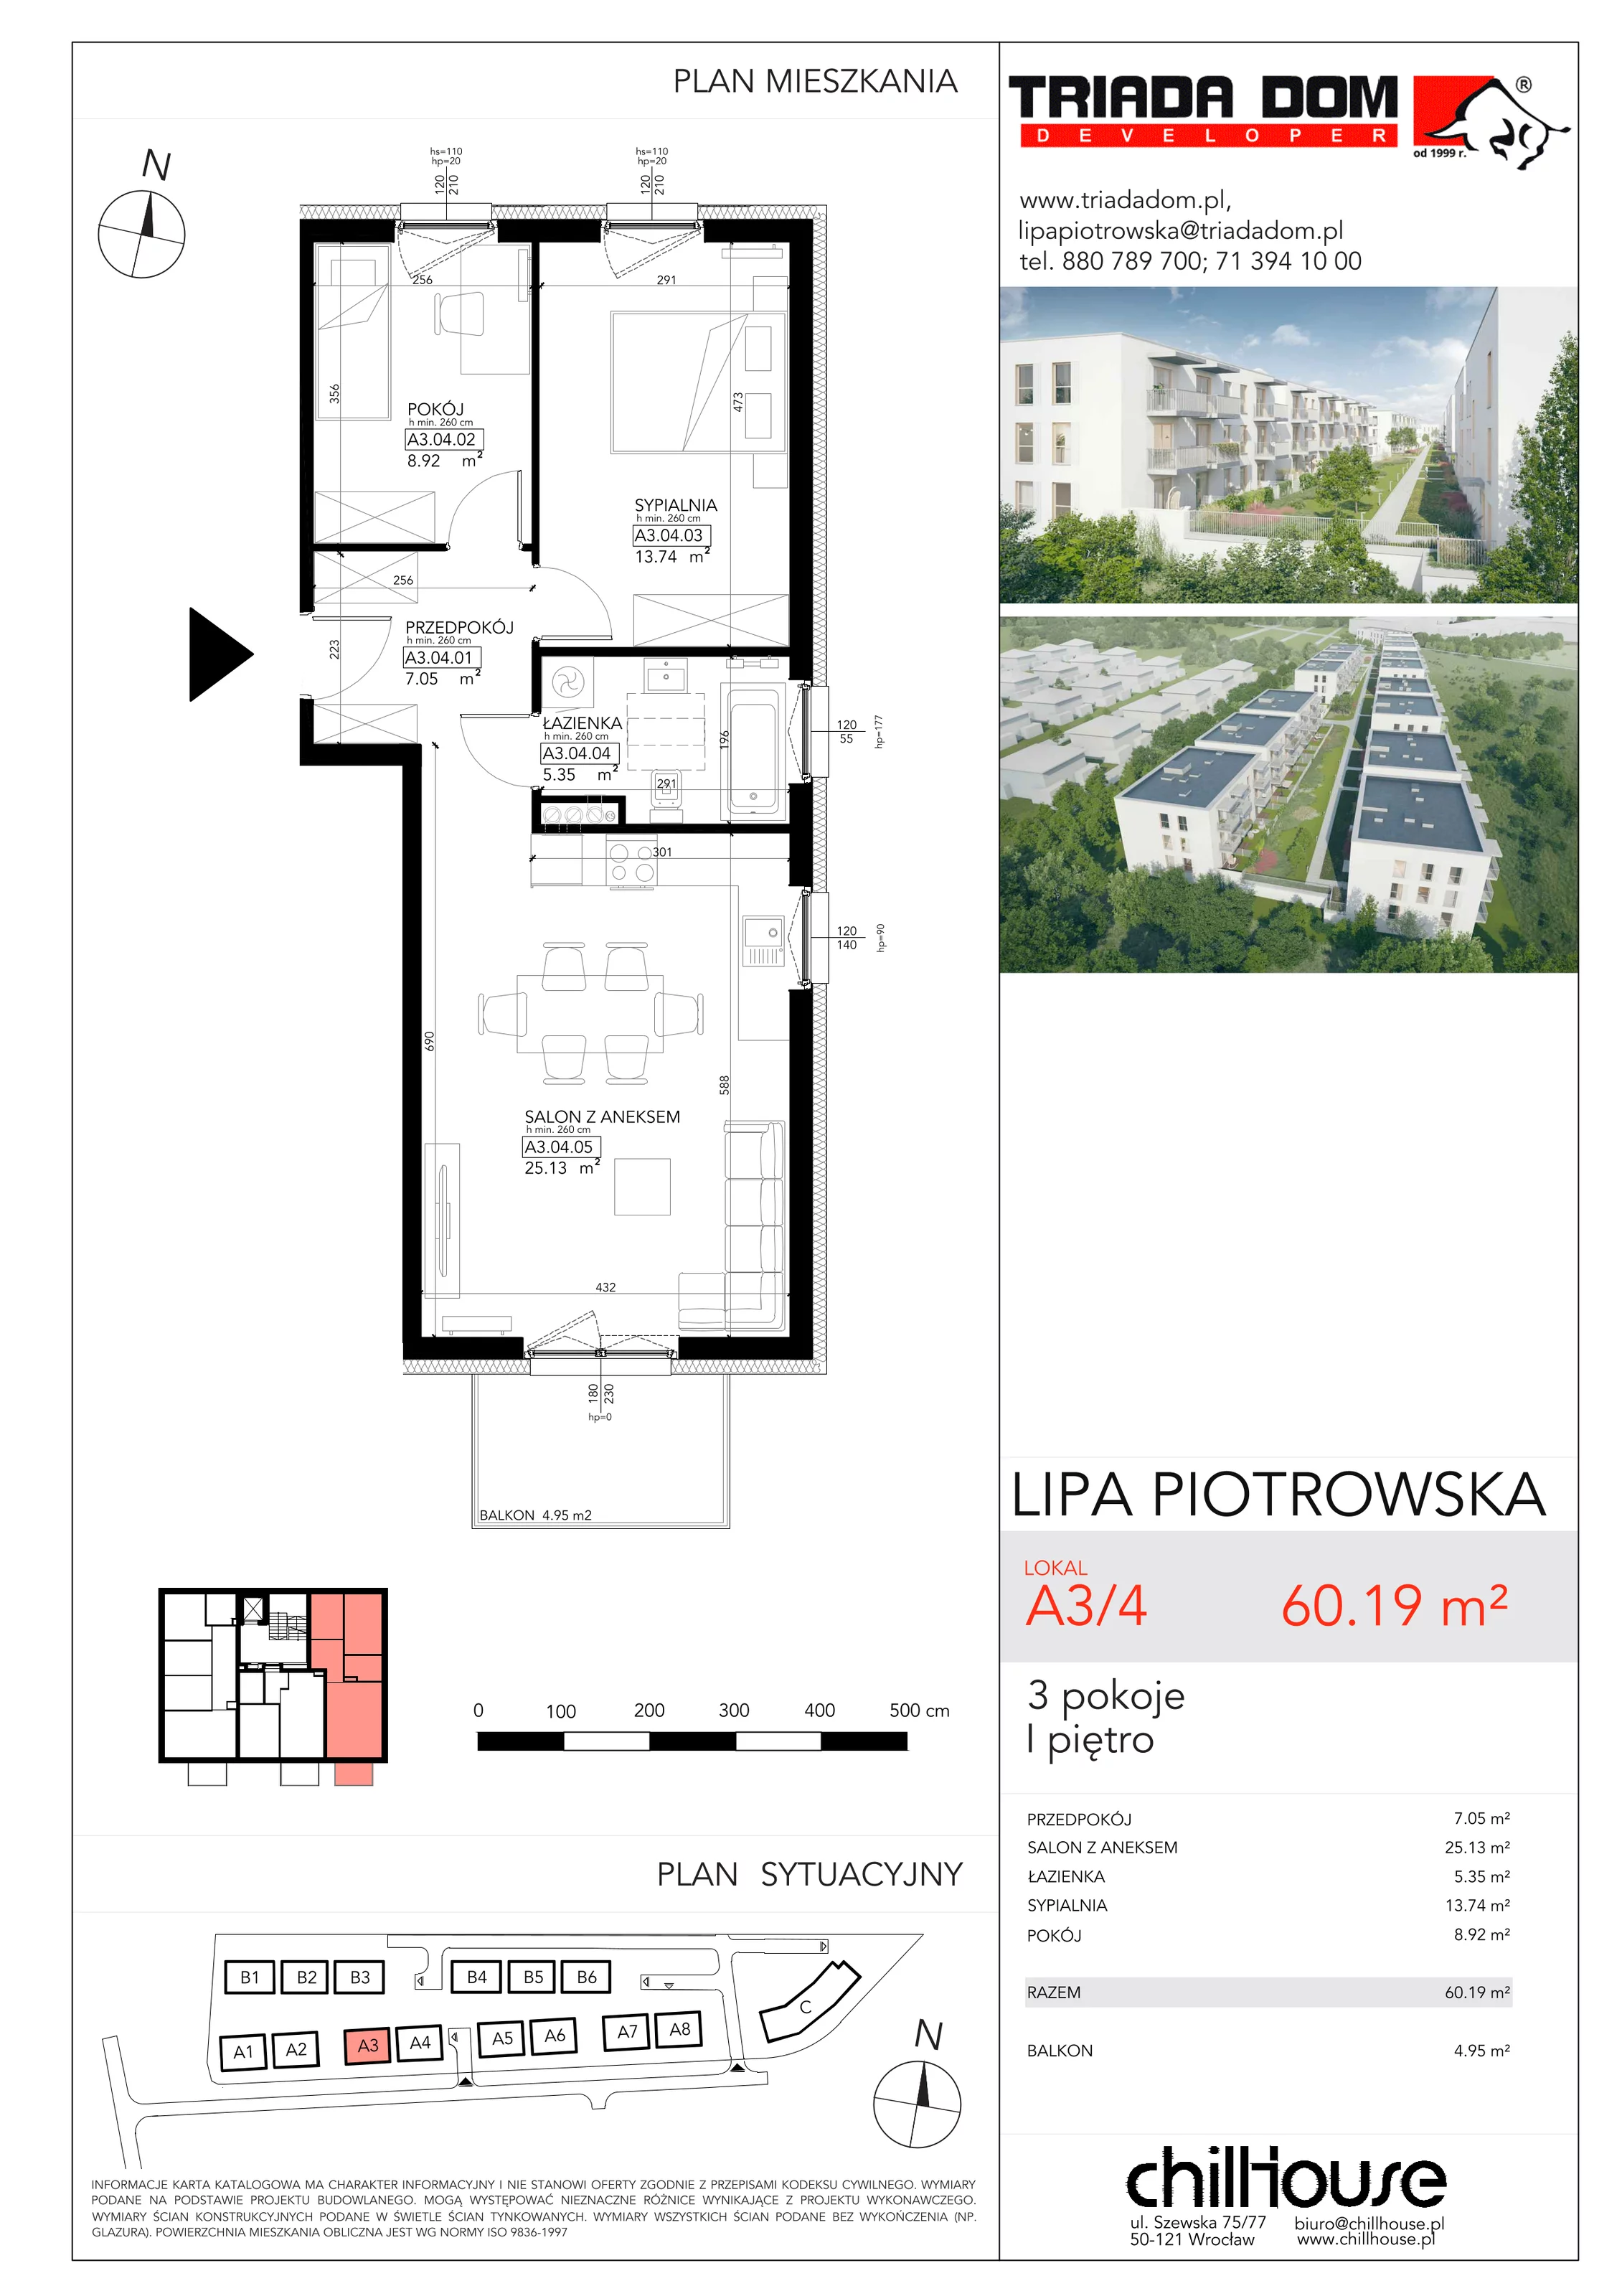 Mieszkanie 60,19 m², piętro 1, oferta nr A34, Lipa Piotrowska, Wrocław, Lipa Piotrowska, ul. Lawendowa / Melisowa